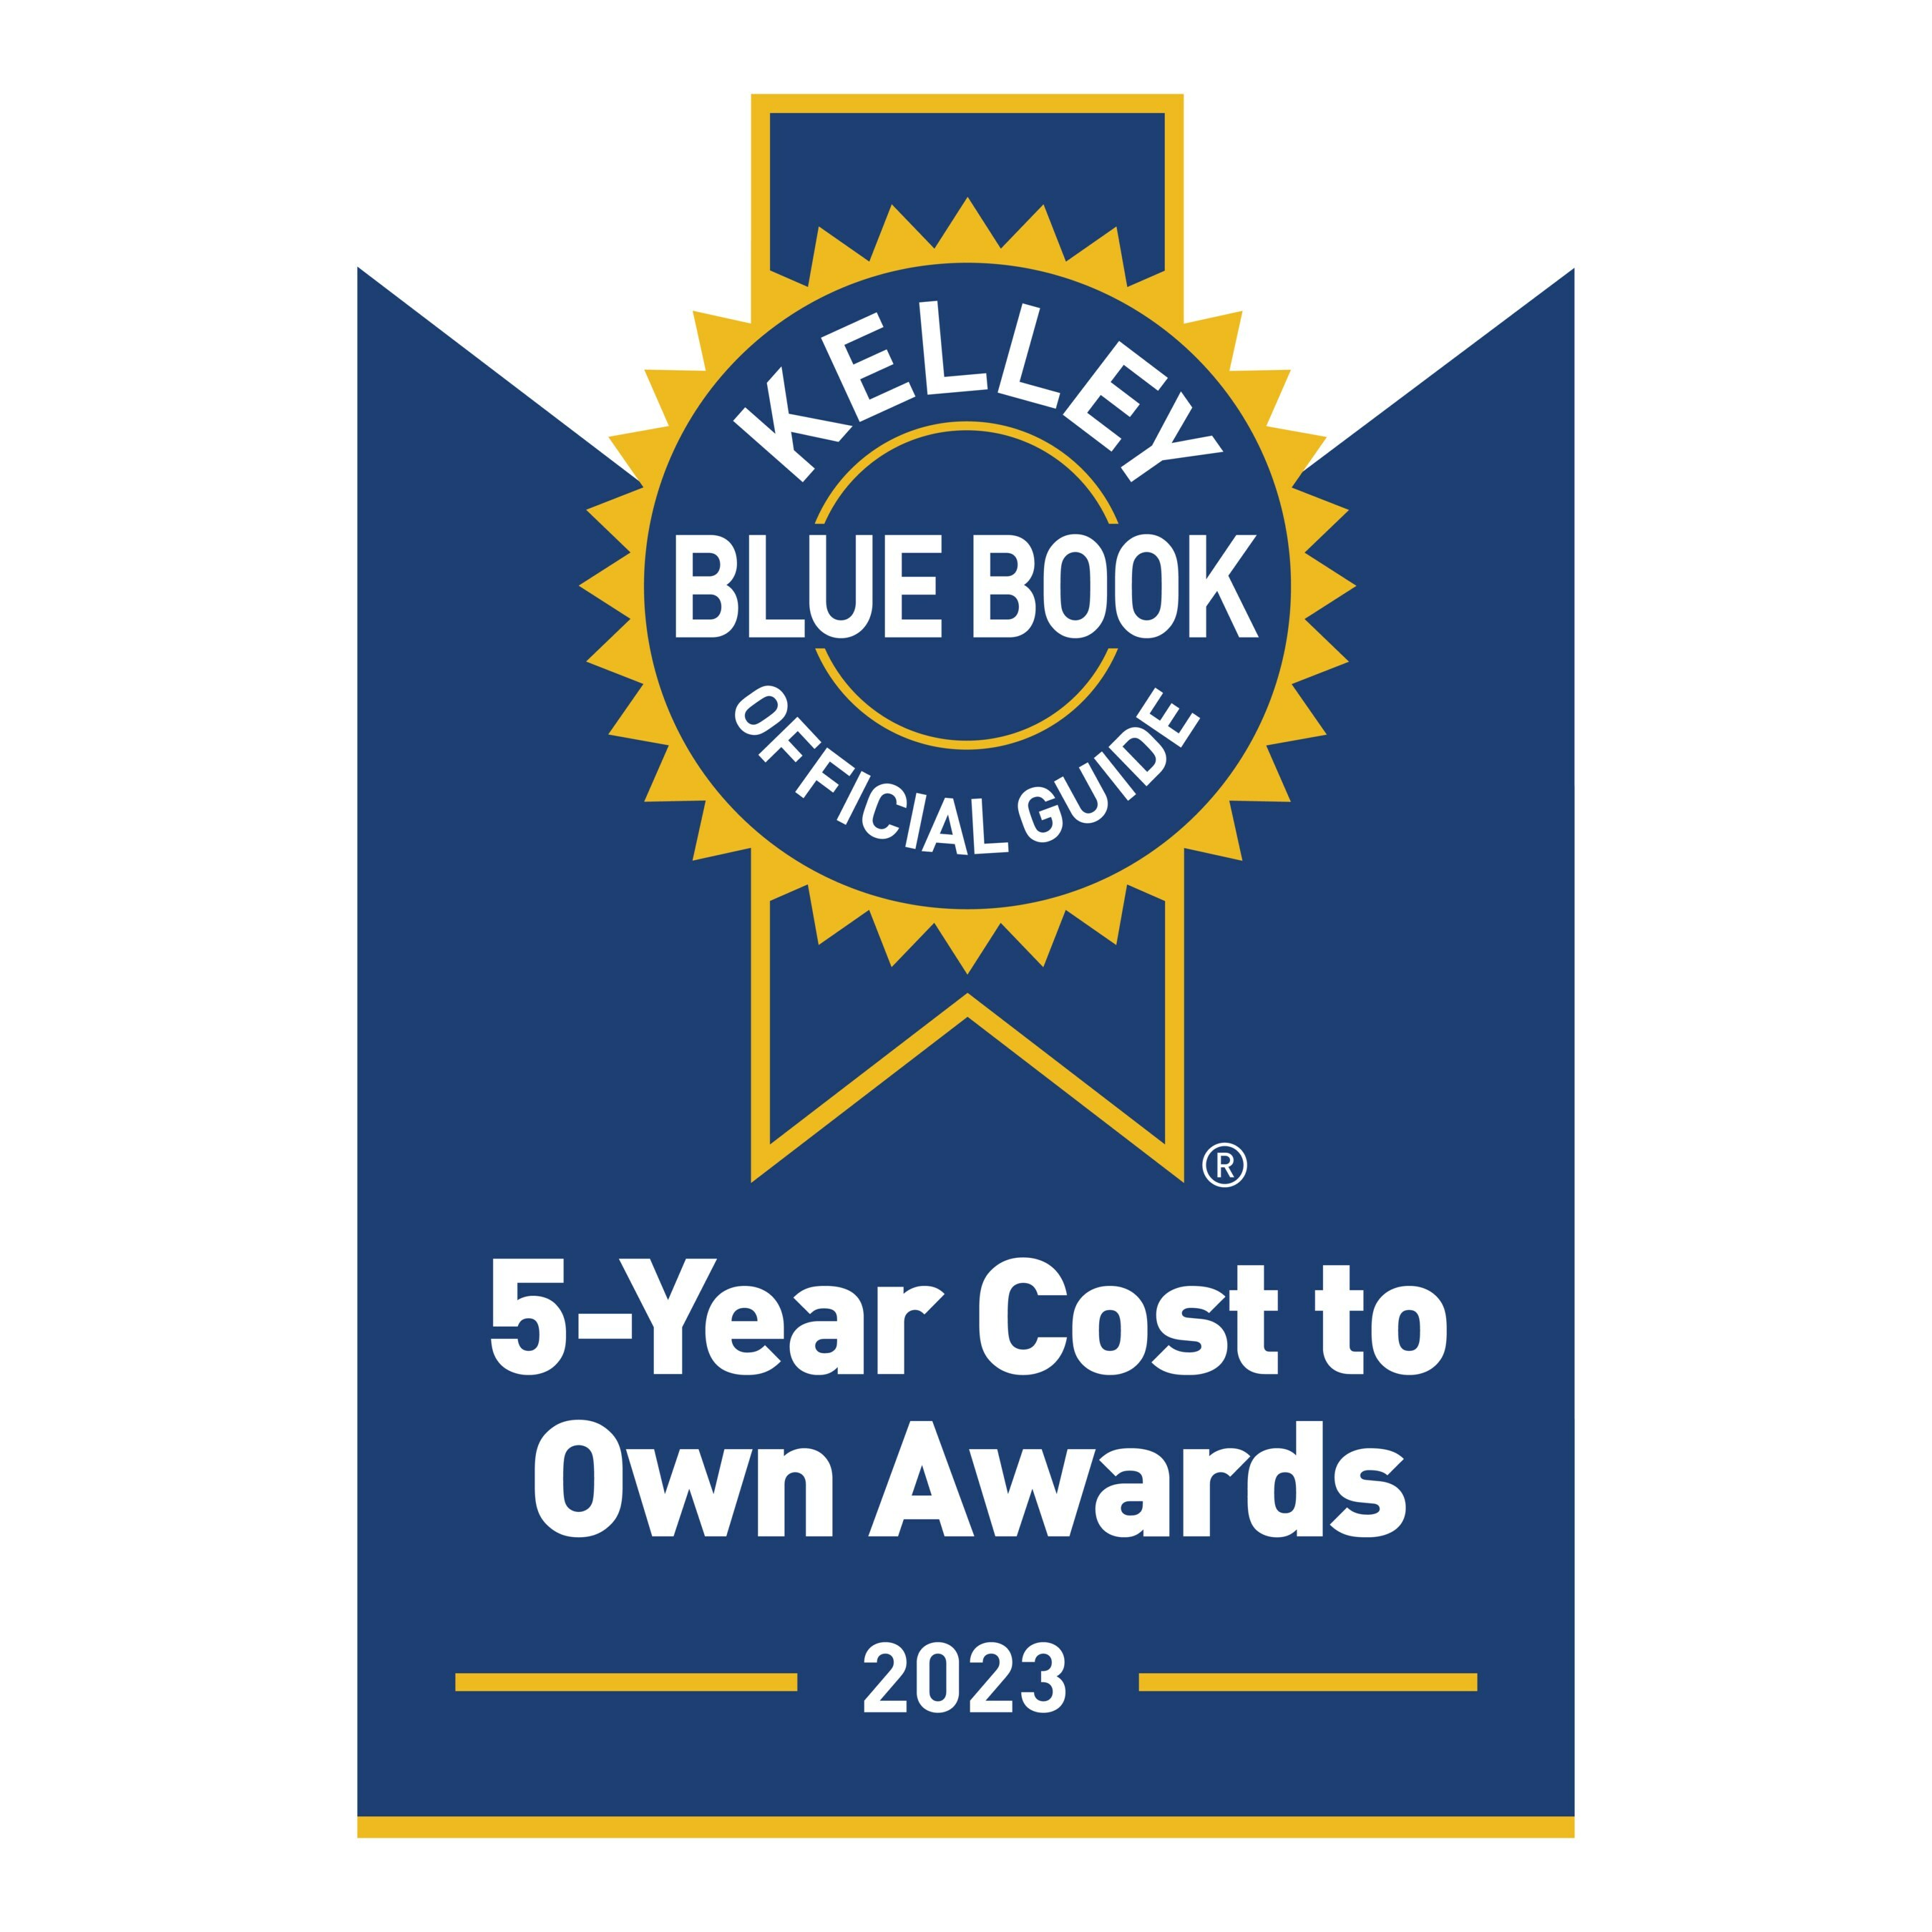 KBB: 2023 Best Resale Value Awards